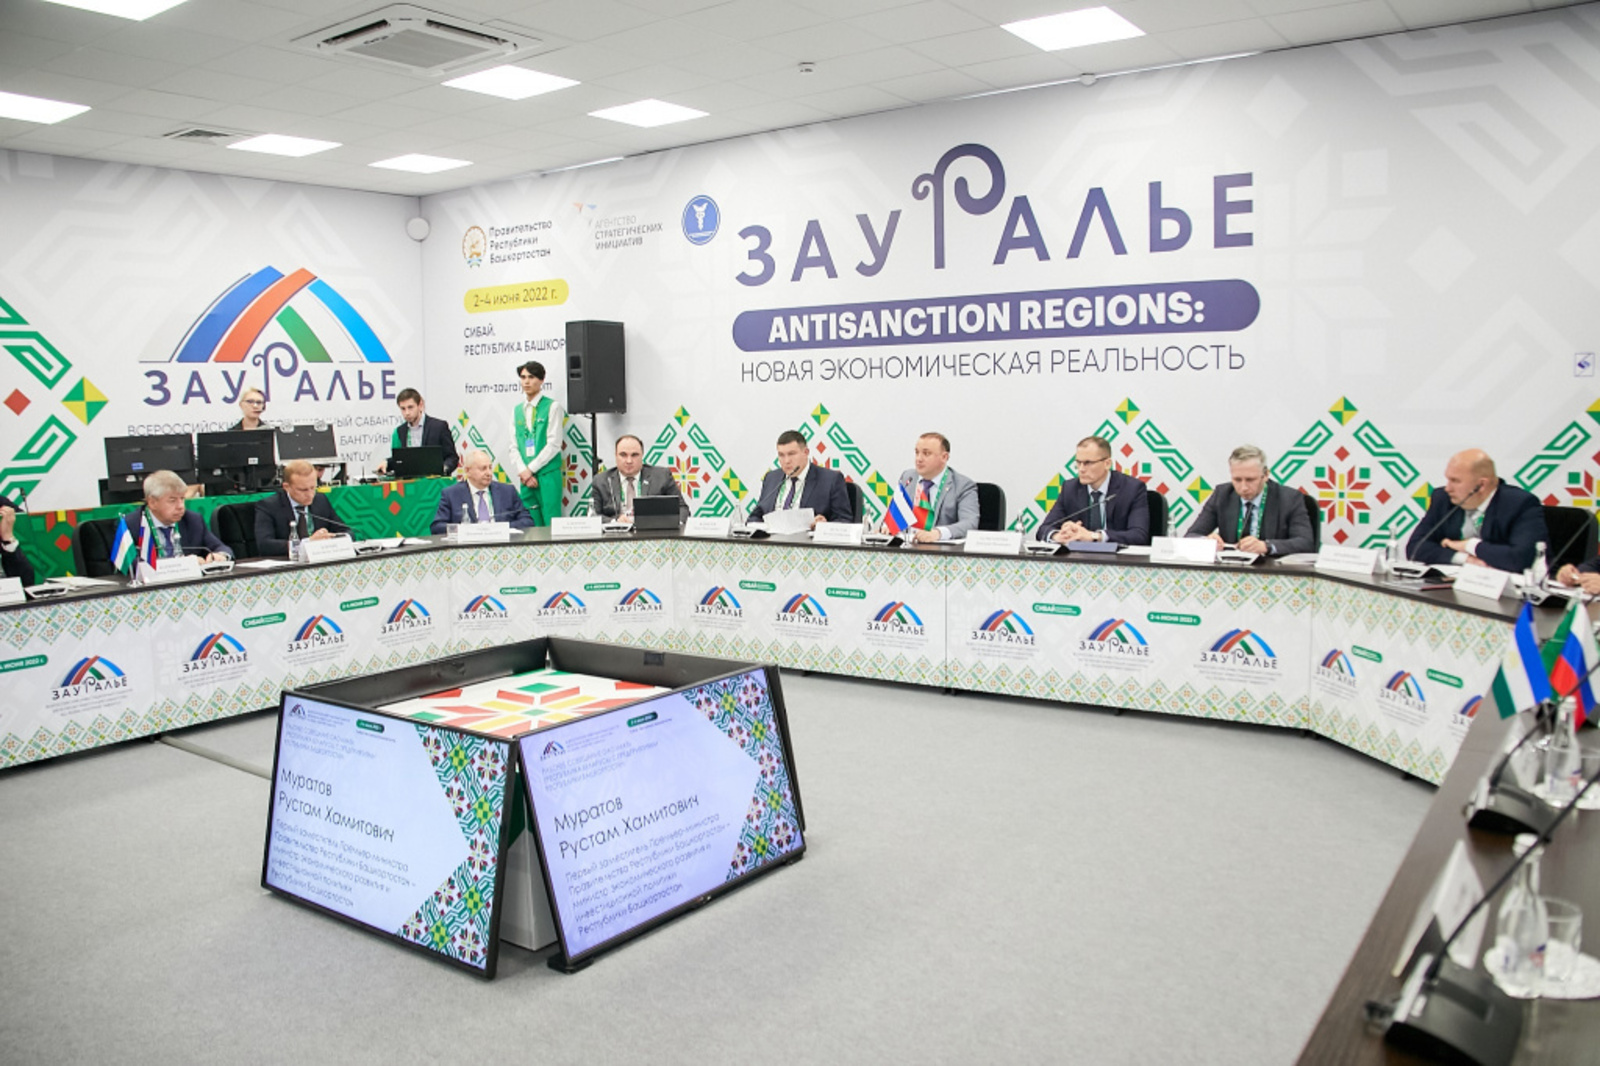 На инвестсабантуе «Зауралье-2022» обсудили возможность локализации производства МАЗ в Башкирии